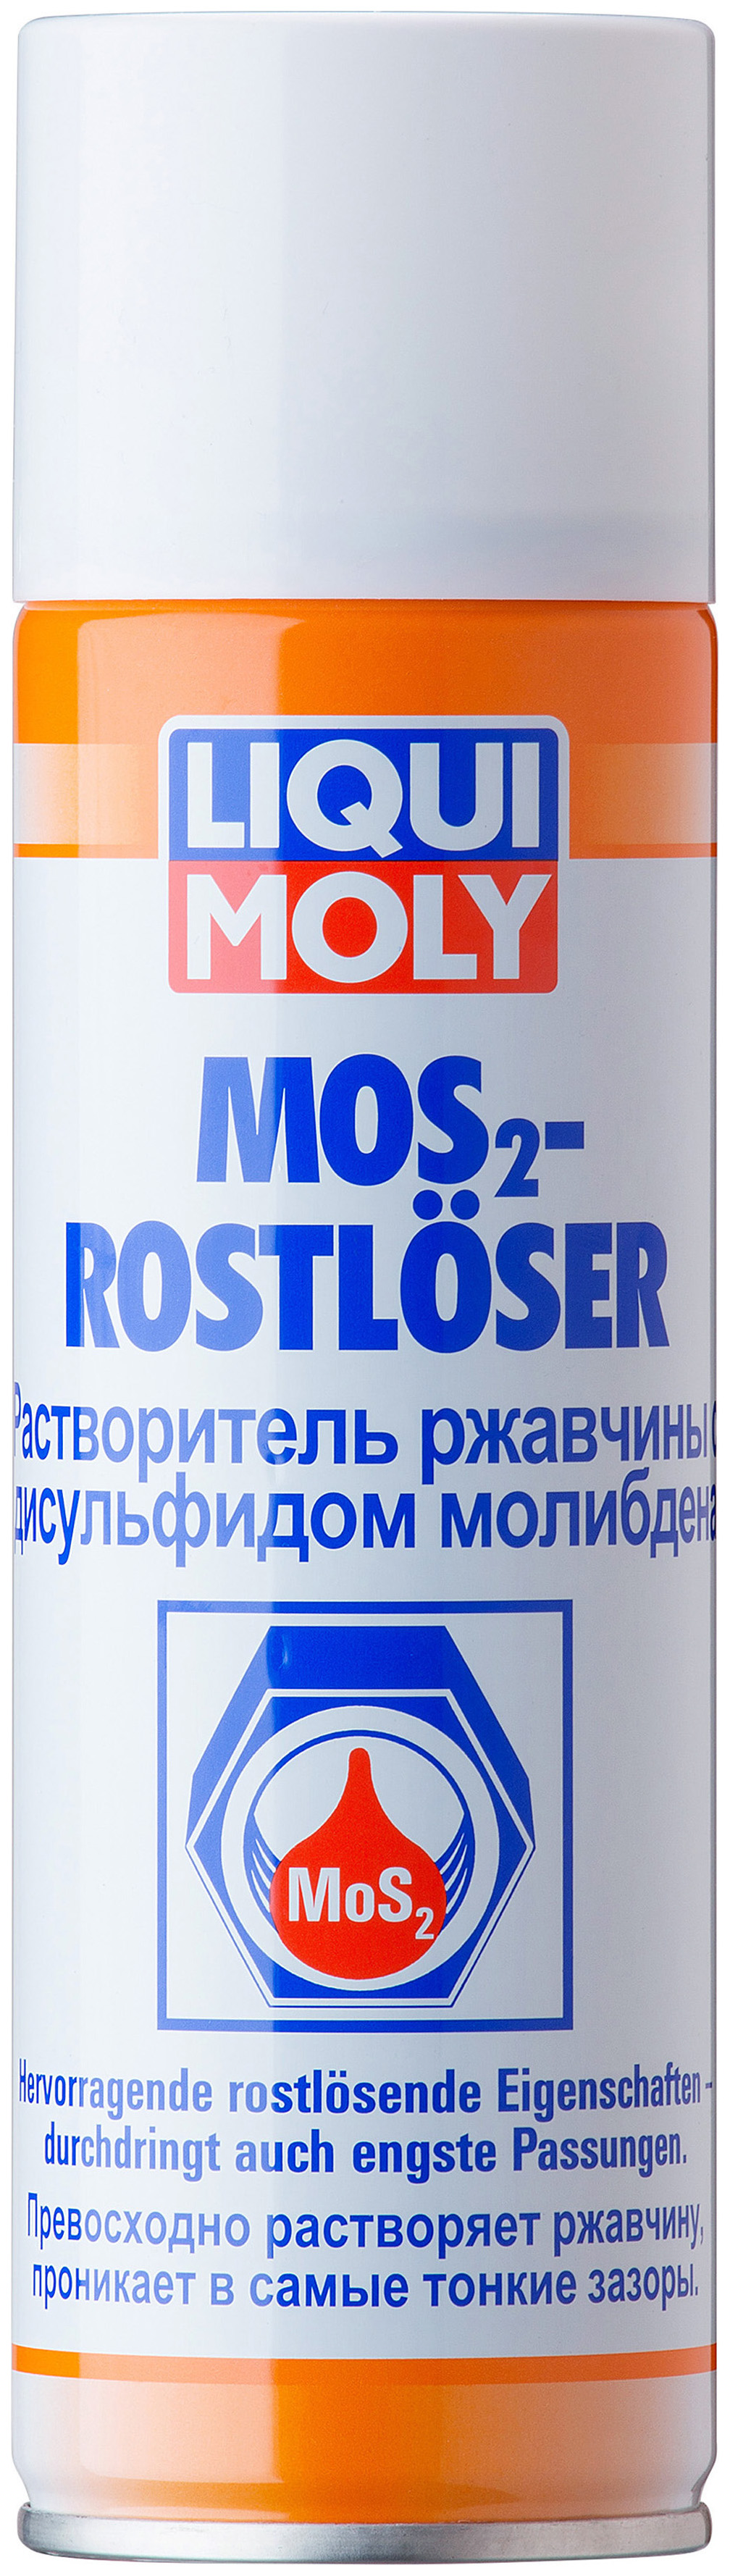 фото Растворитель ржавчины с дисульфидом молибдена liqui moly 1986 mos2-rostloser 0,3 л